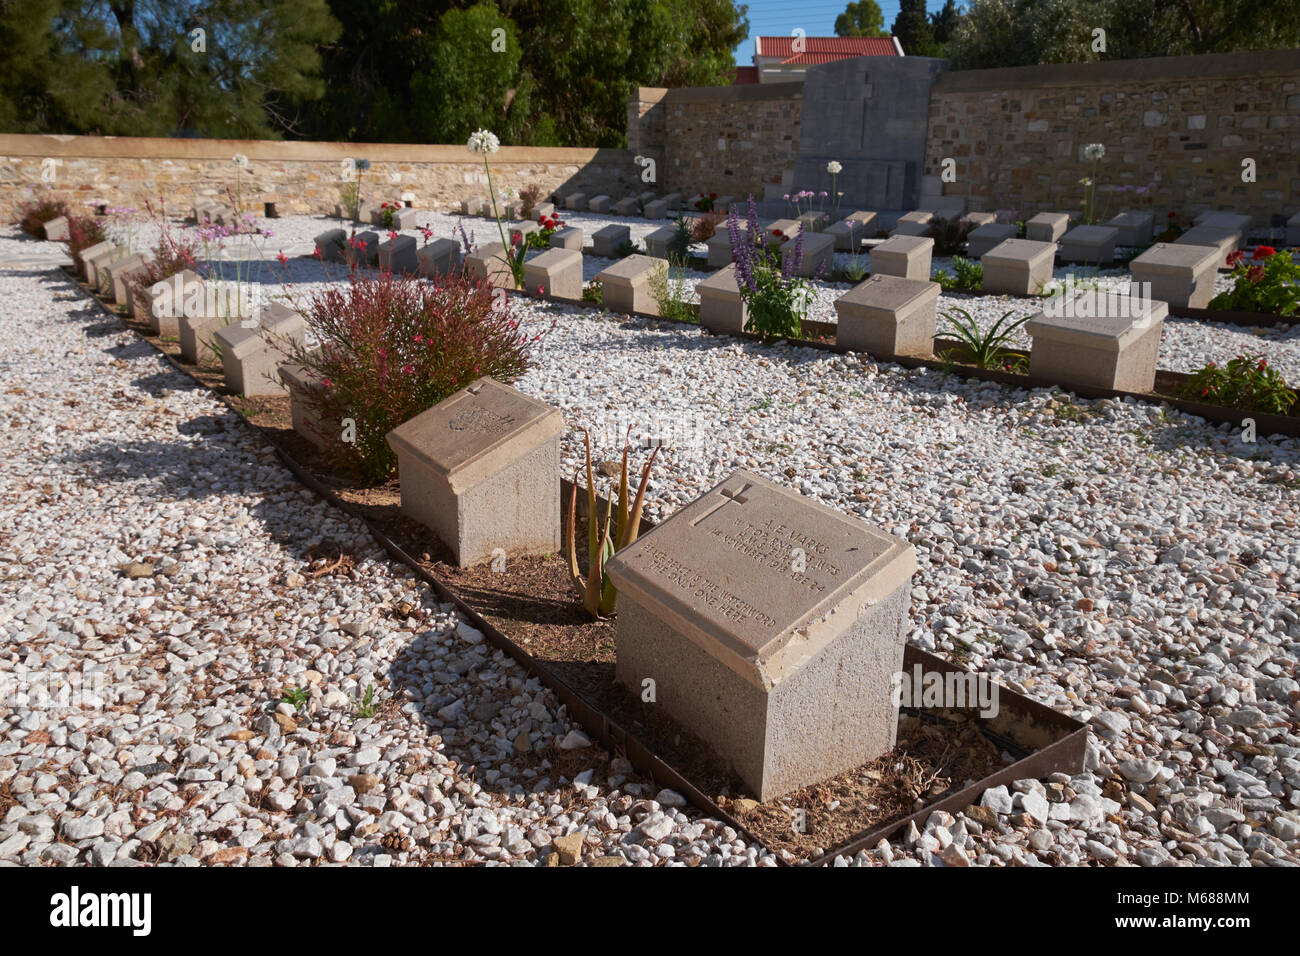 El Syra Nuevo Cementerio Británico, Ermoupoli, Syros (aka Siros o Syra), Cyclades, Grecia, es mantenida por la comunidad Comisión de tumbas de guerra. Foto de stock